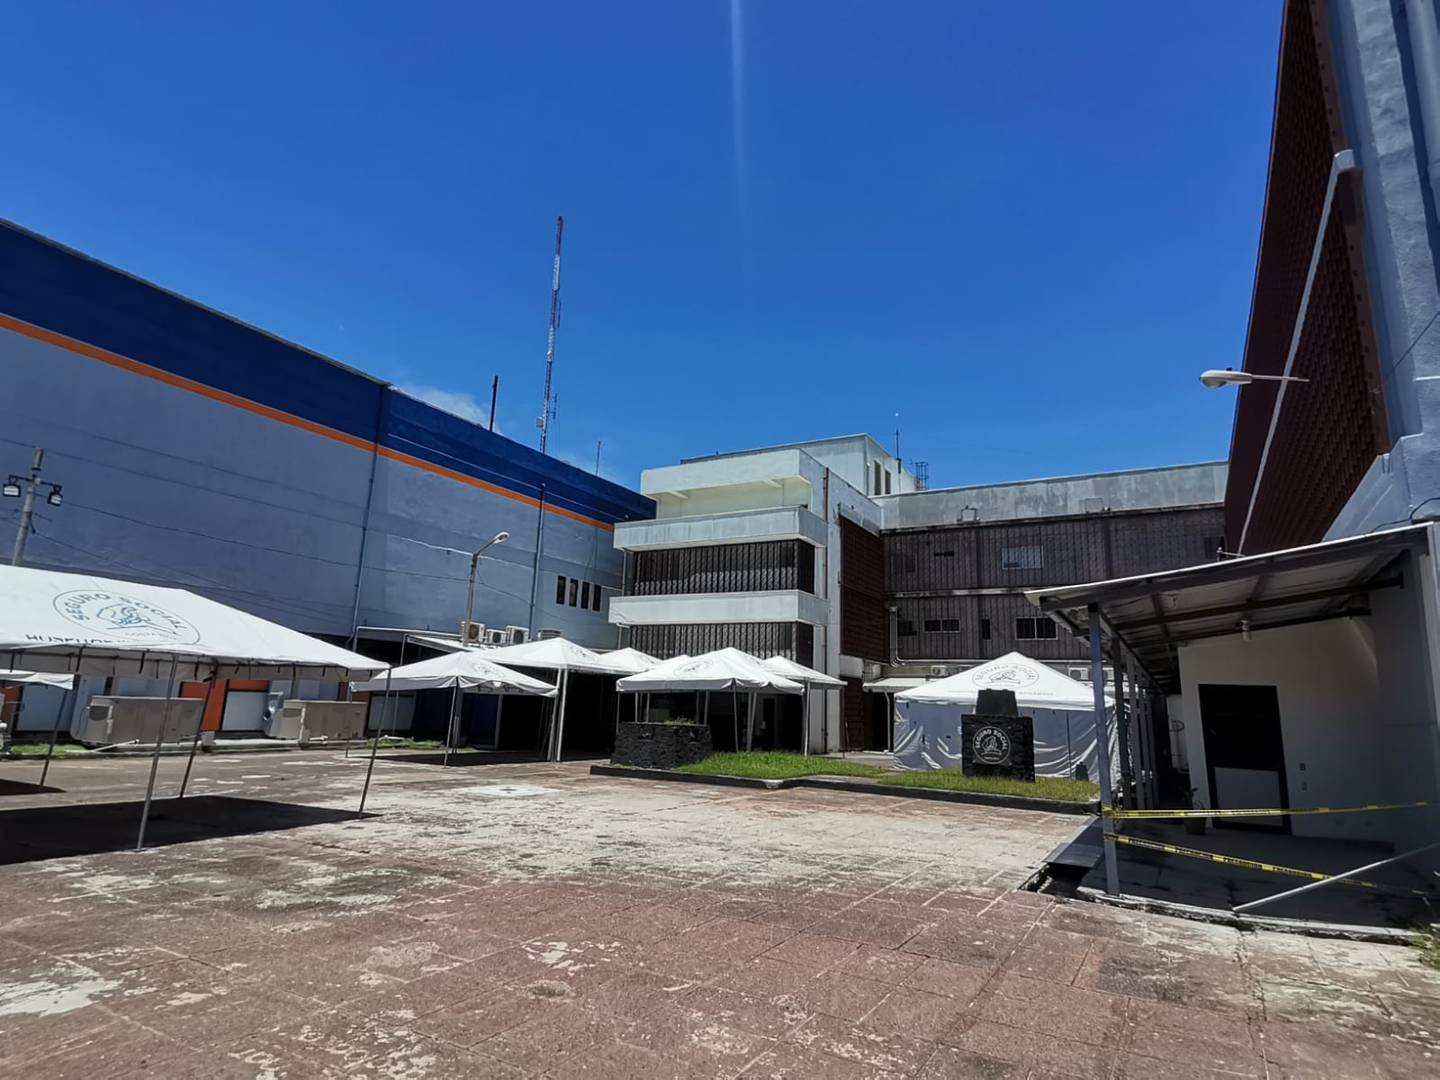 Así quedó el Hospital Monseñor Sanabria luego de la demolición de seis pisos.  Un nuevo hospital se levanta a 5 km. de ahí, en el Invu de Barranca y se espera terminarlo el año entrante. Foto: Andrés Garita.